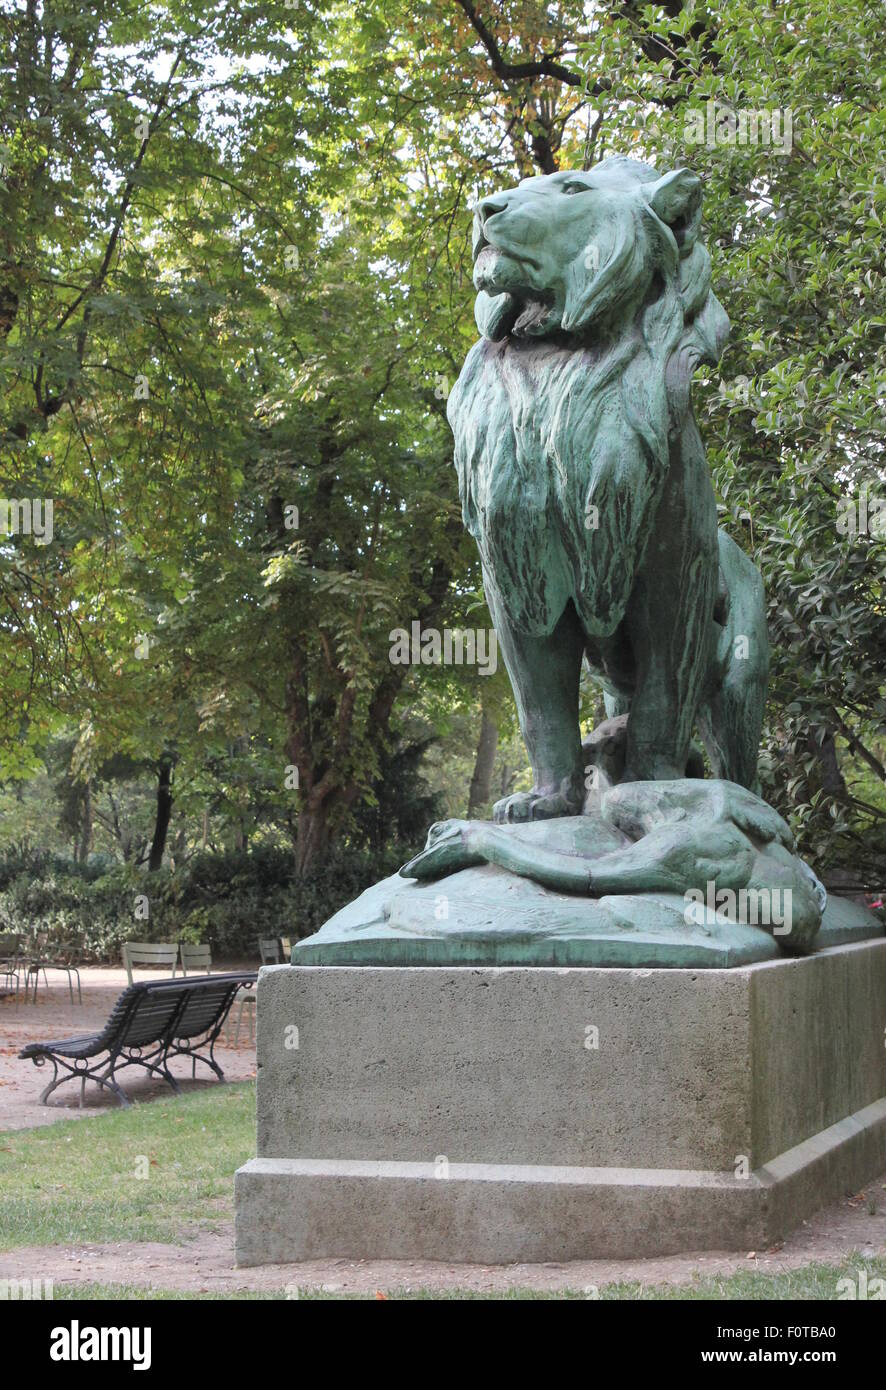 La sculpture du lion dans le jardin du Luxembourg Banque D'Images